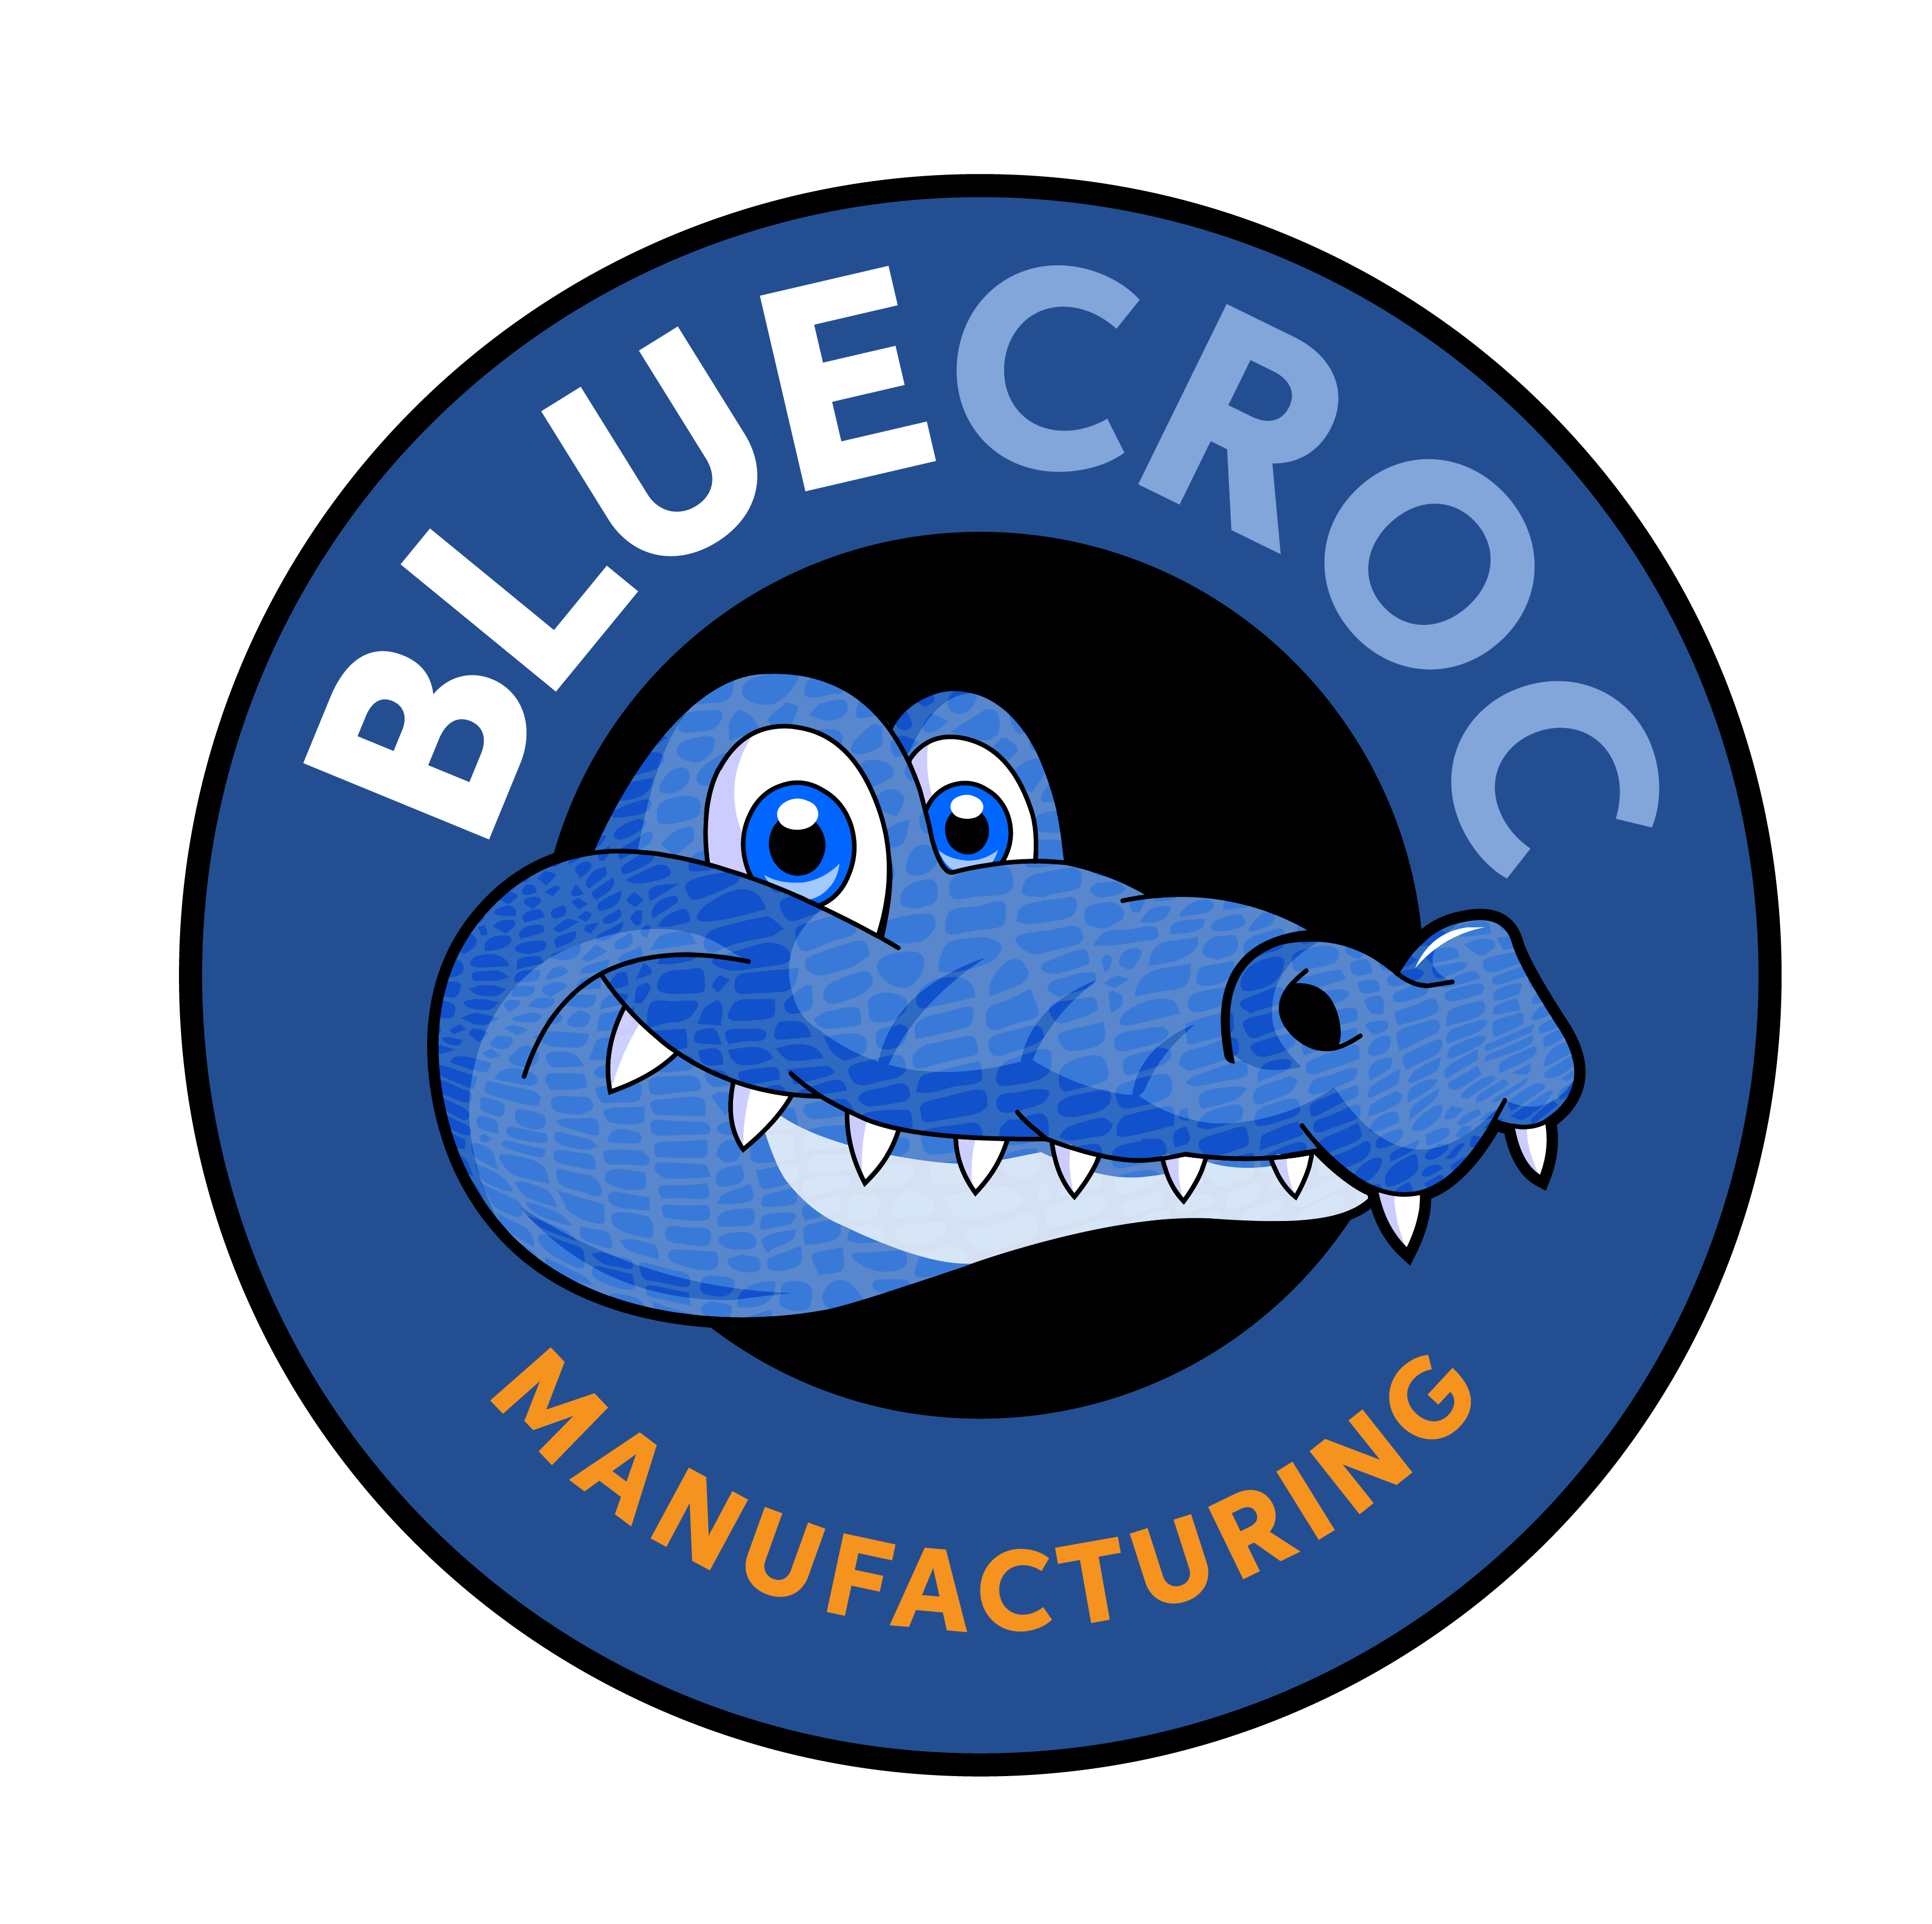 Blue Croc Manufacturing